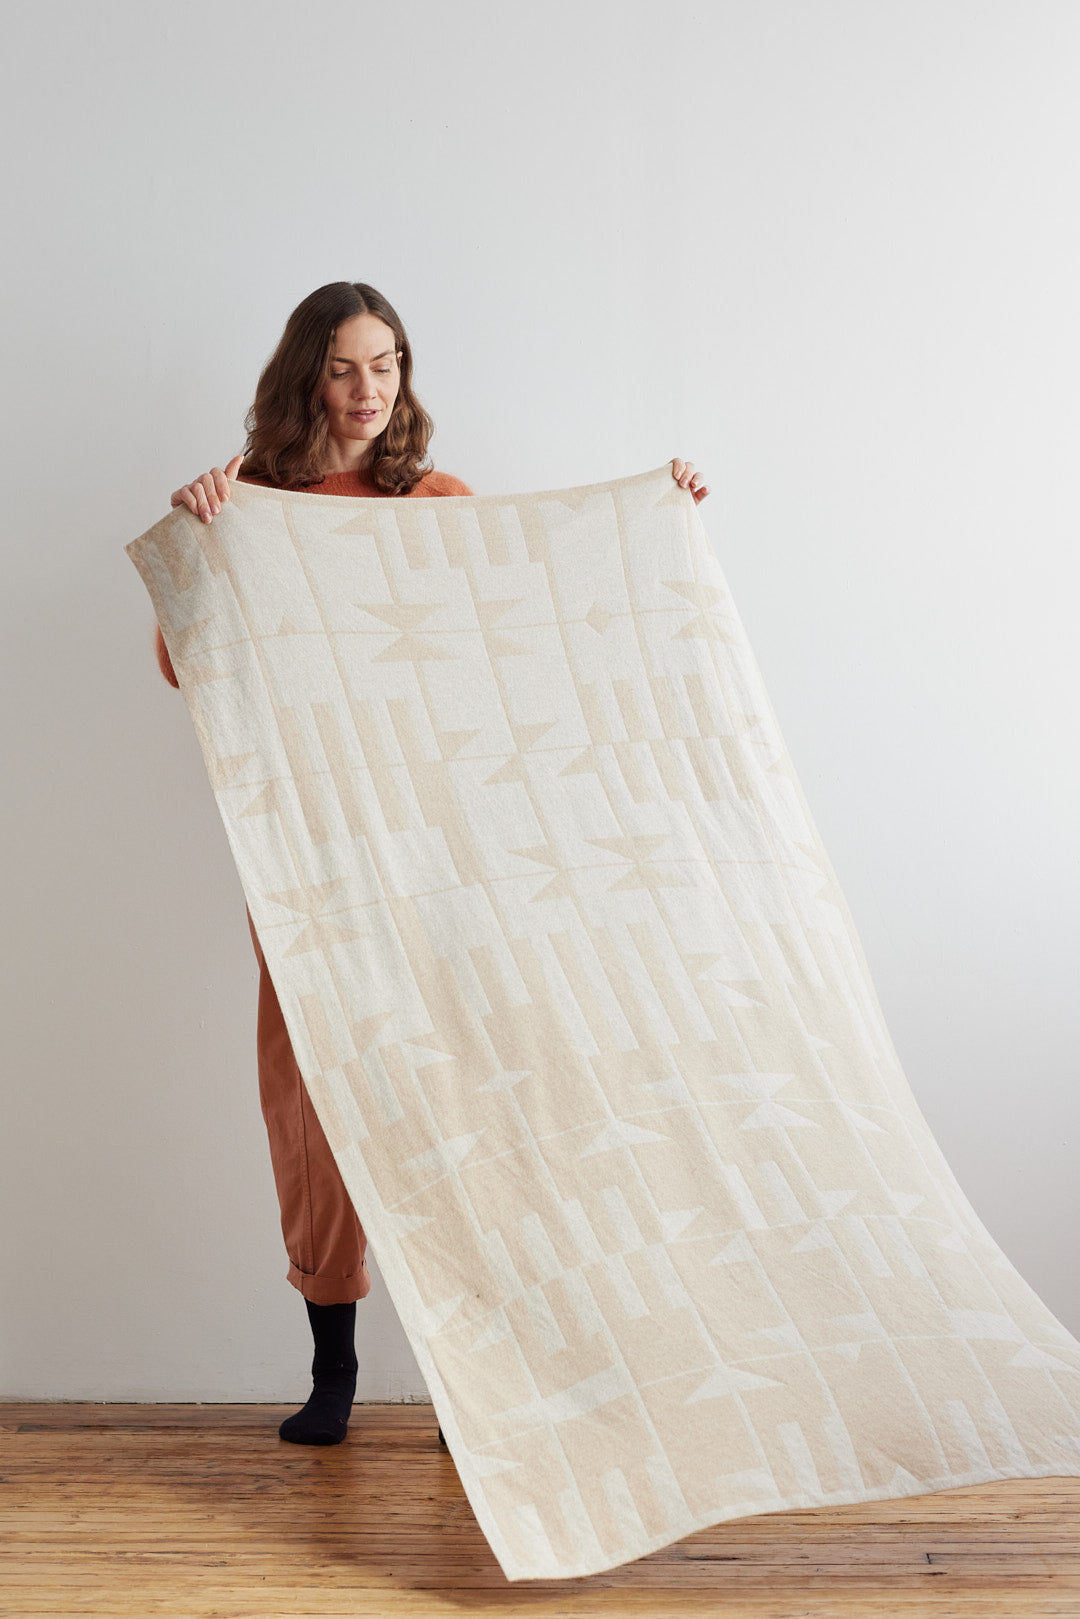 Blanket "Keel" - Oatmeal & Swansdown